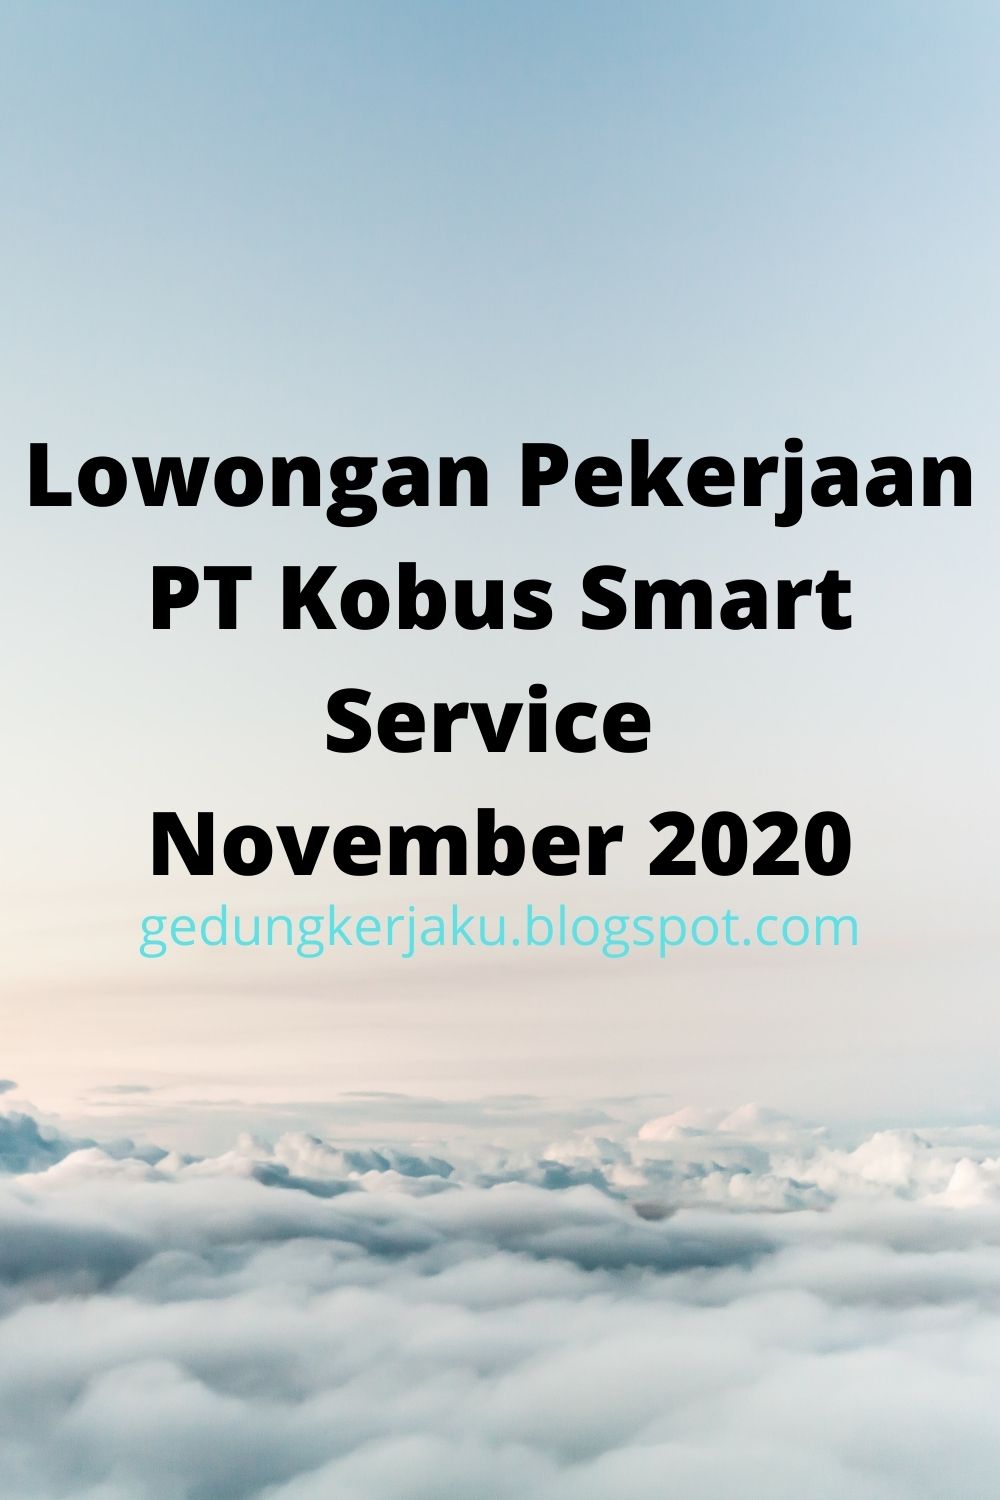 Lowongan Pekerjaan PT Kobus Smart Service November 2020